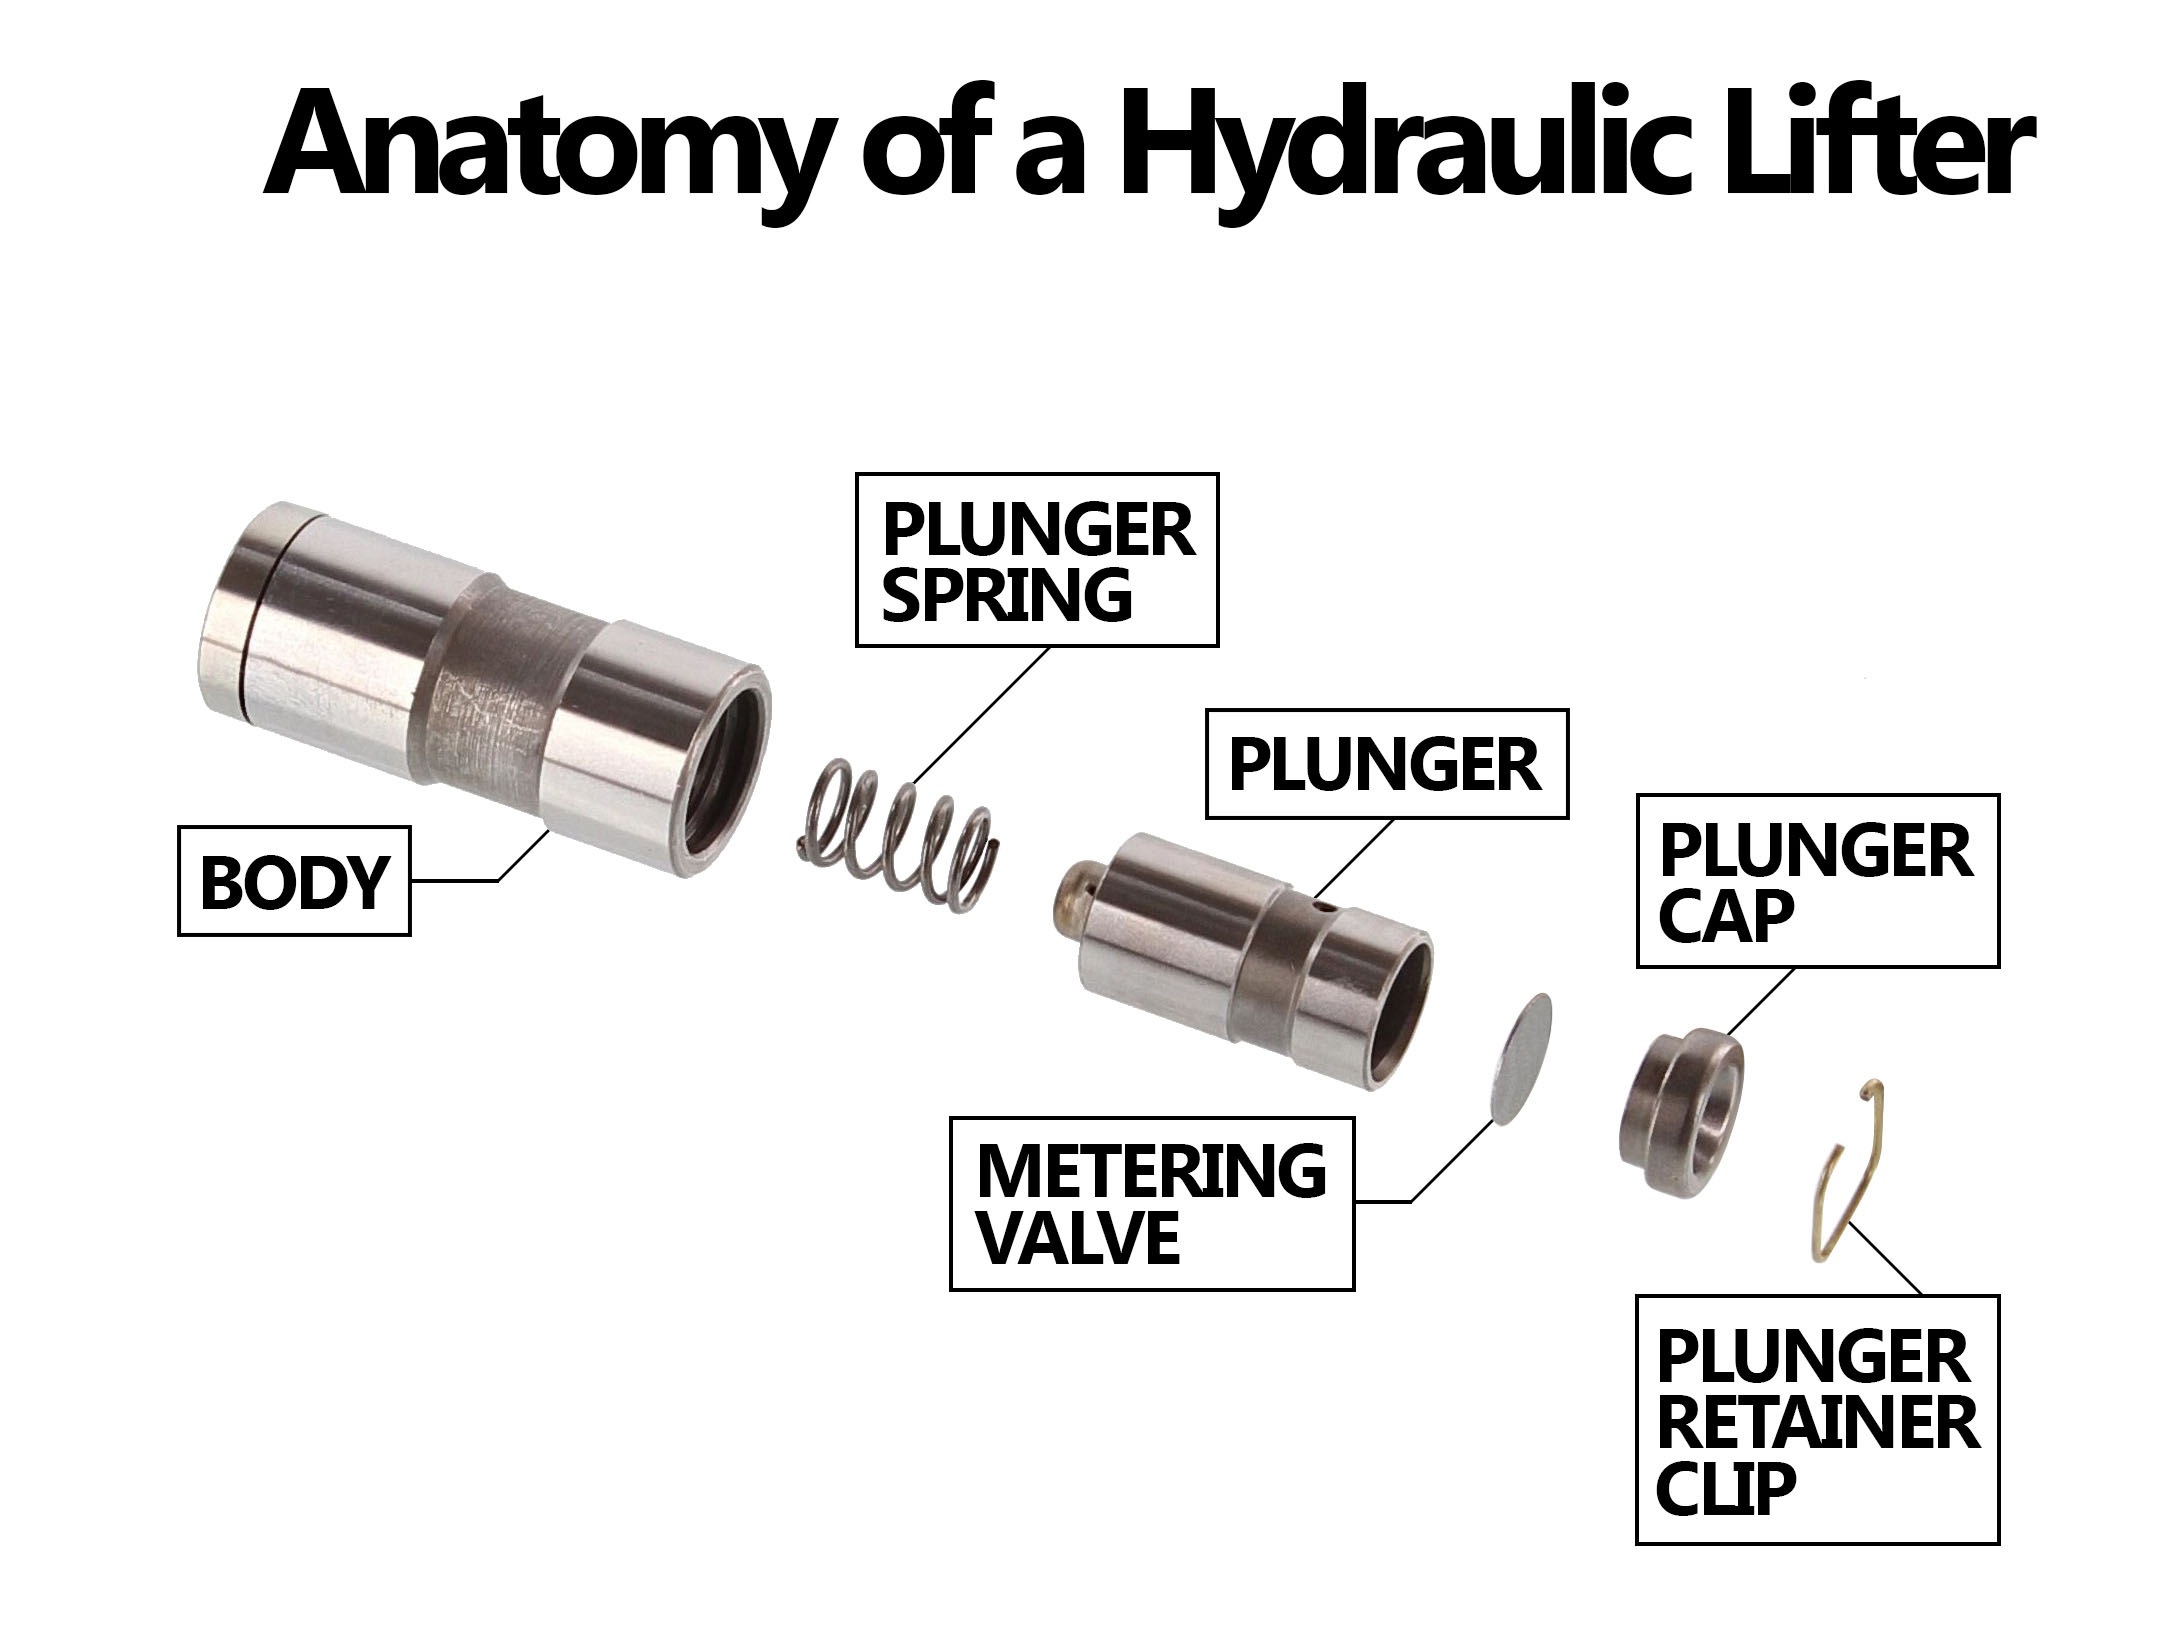 Anatomy of a Hydraulic Lifter